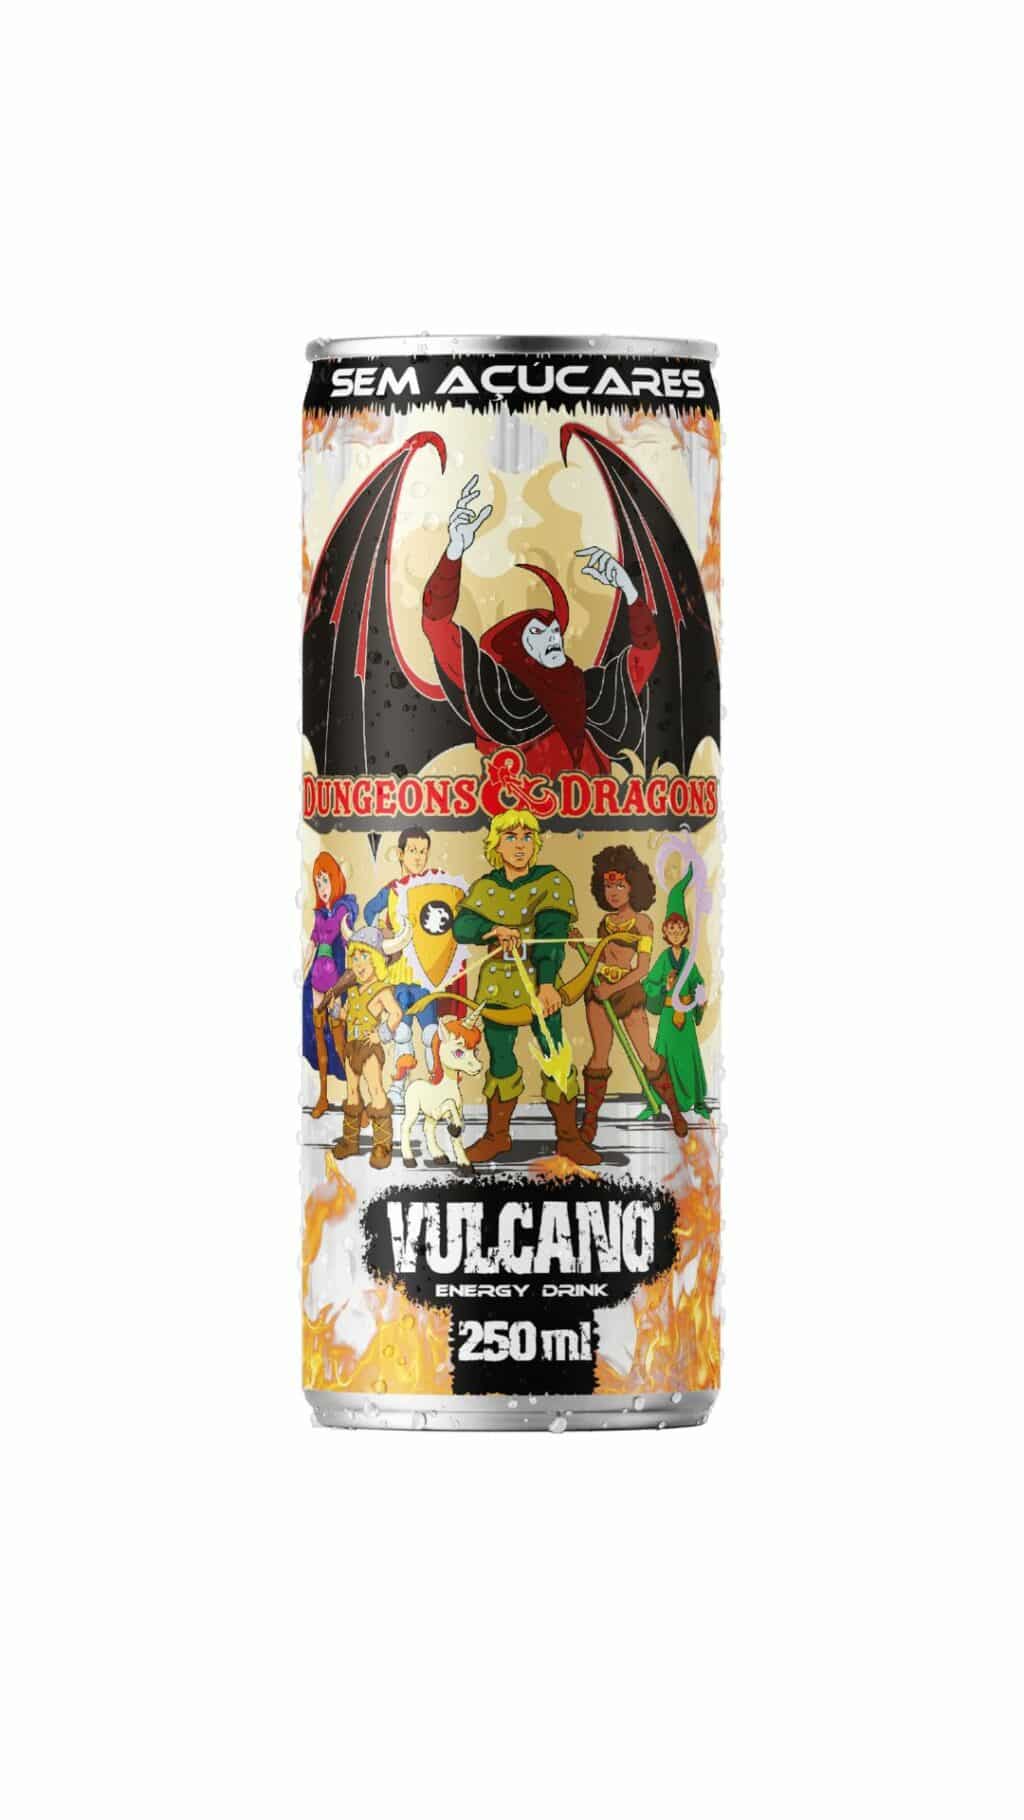 Vulcano Energy Drink lança embalagens temáticas de Caverna do Dragão